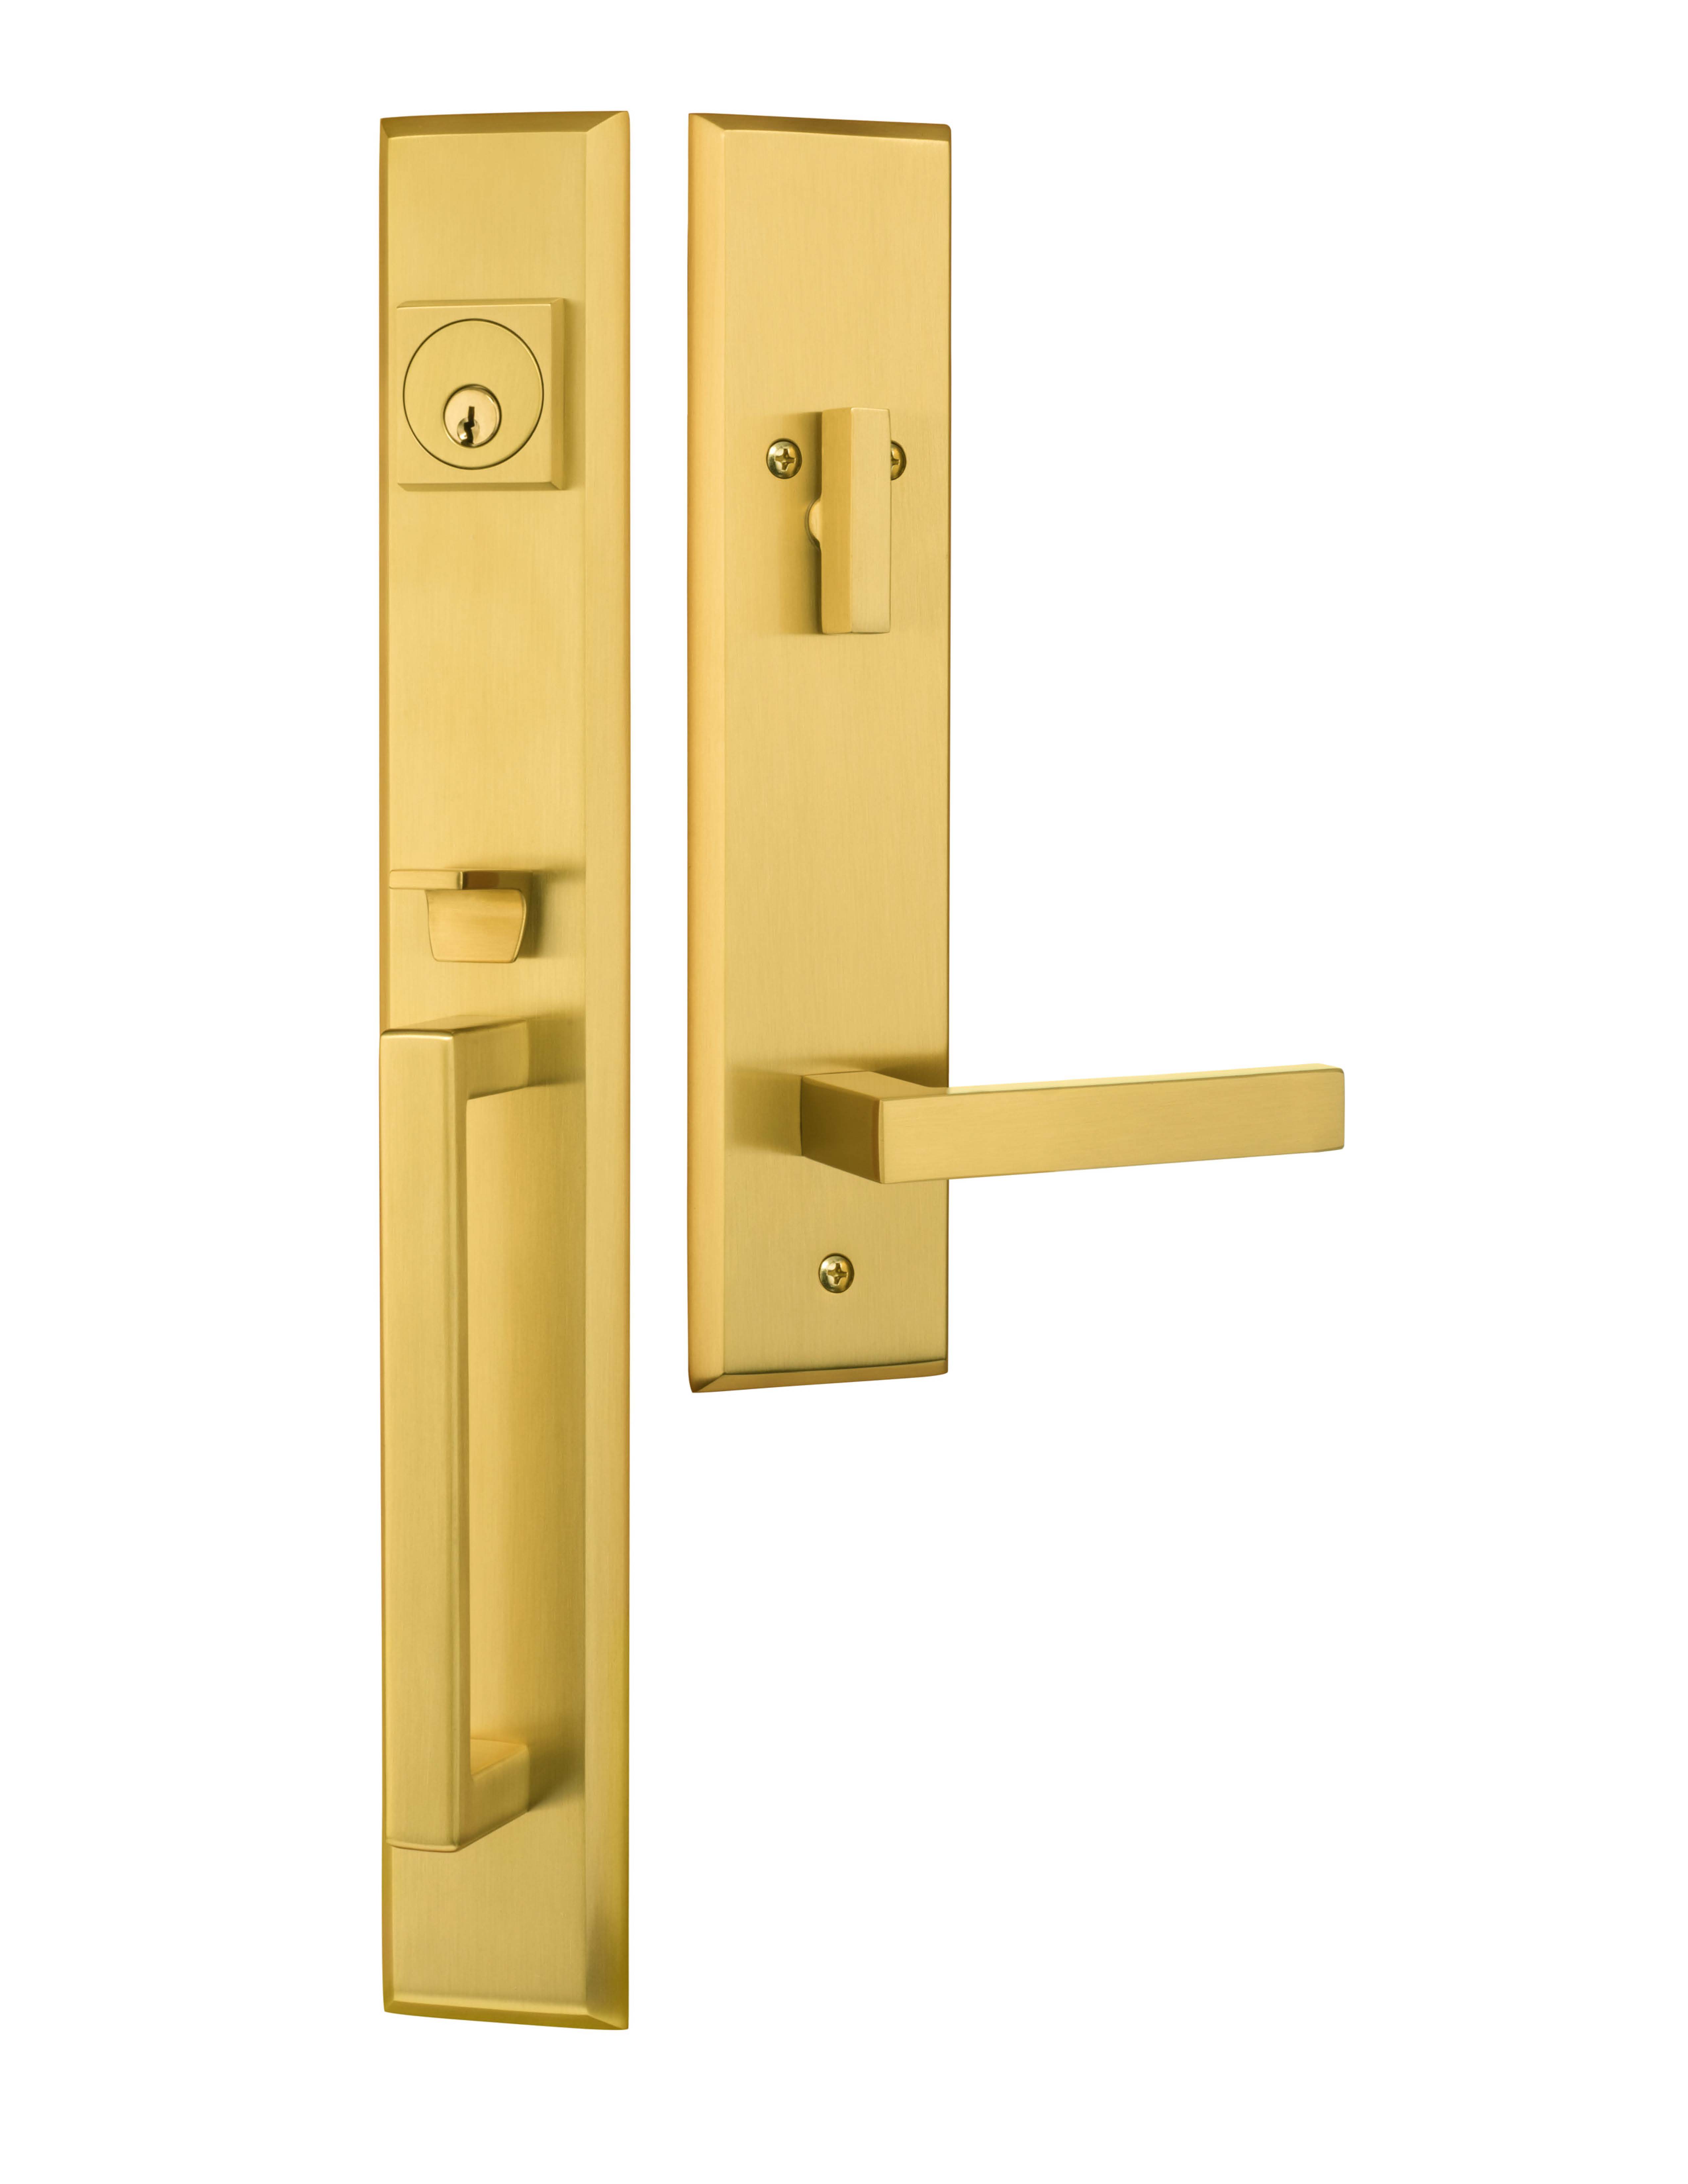 Brushed Brass Entry Door Handles - Image to u